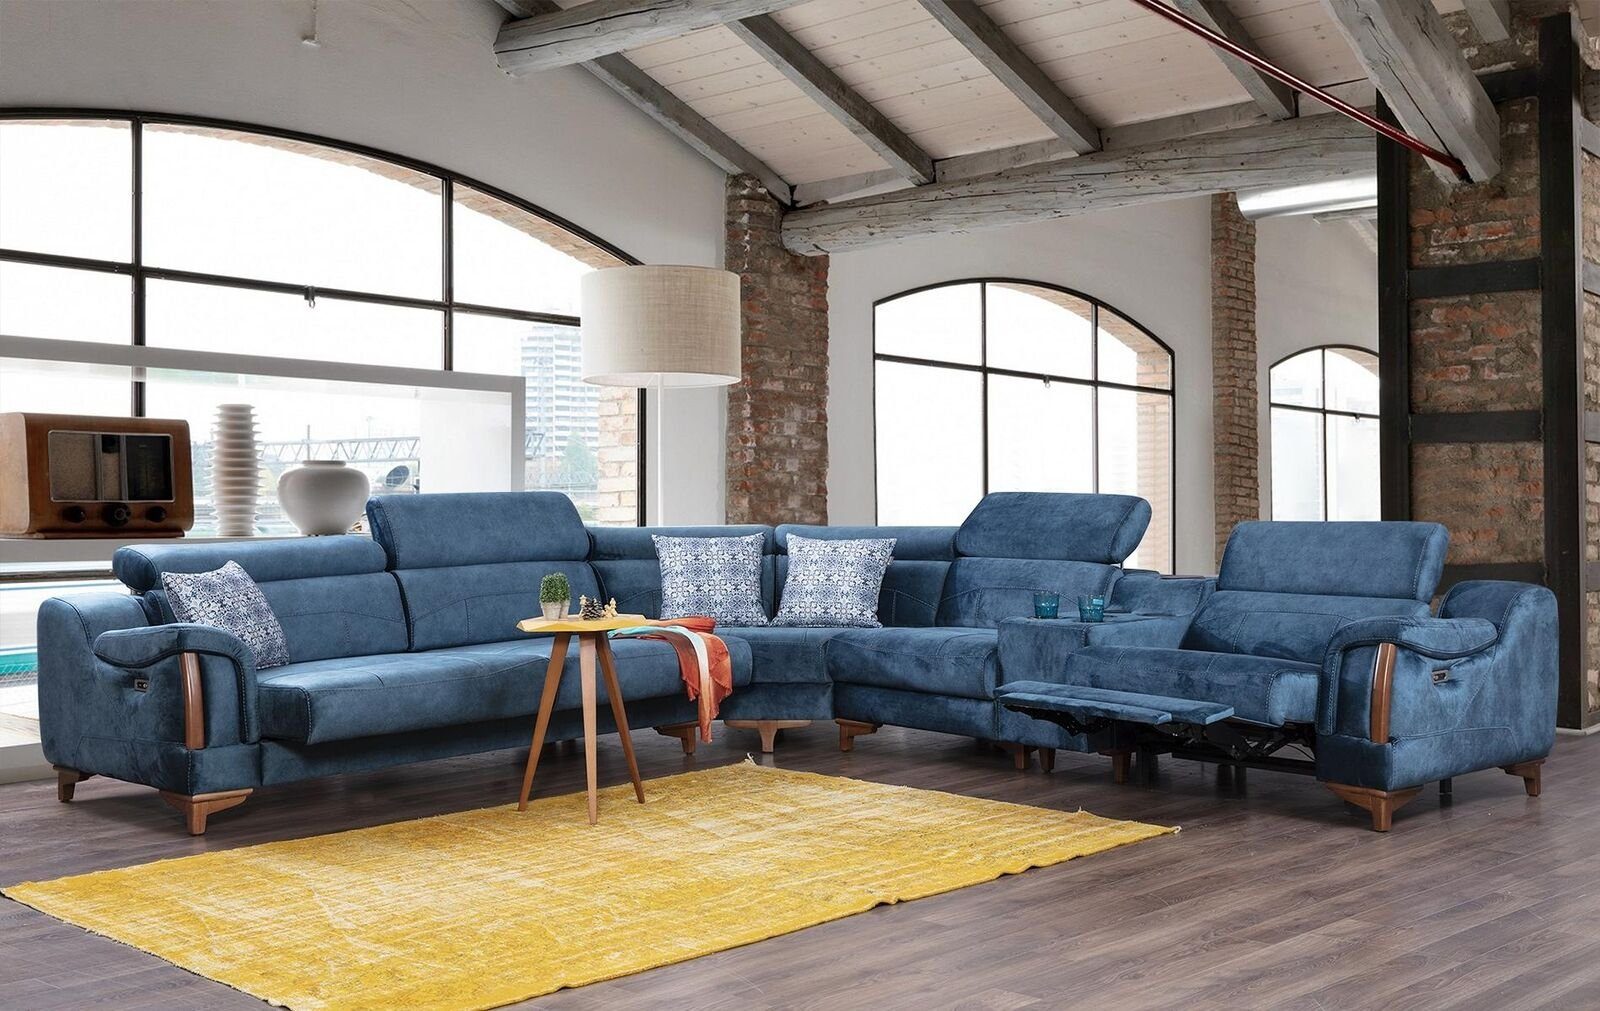 JVmoebel Ecksofa Ecksofa Wohnzimmer Couch Möbel, Stoff Europa Form in Modern Made 6 Teile, L Textil Luxus Design